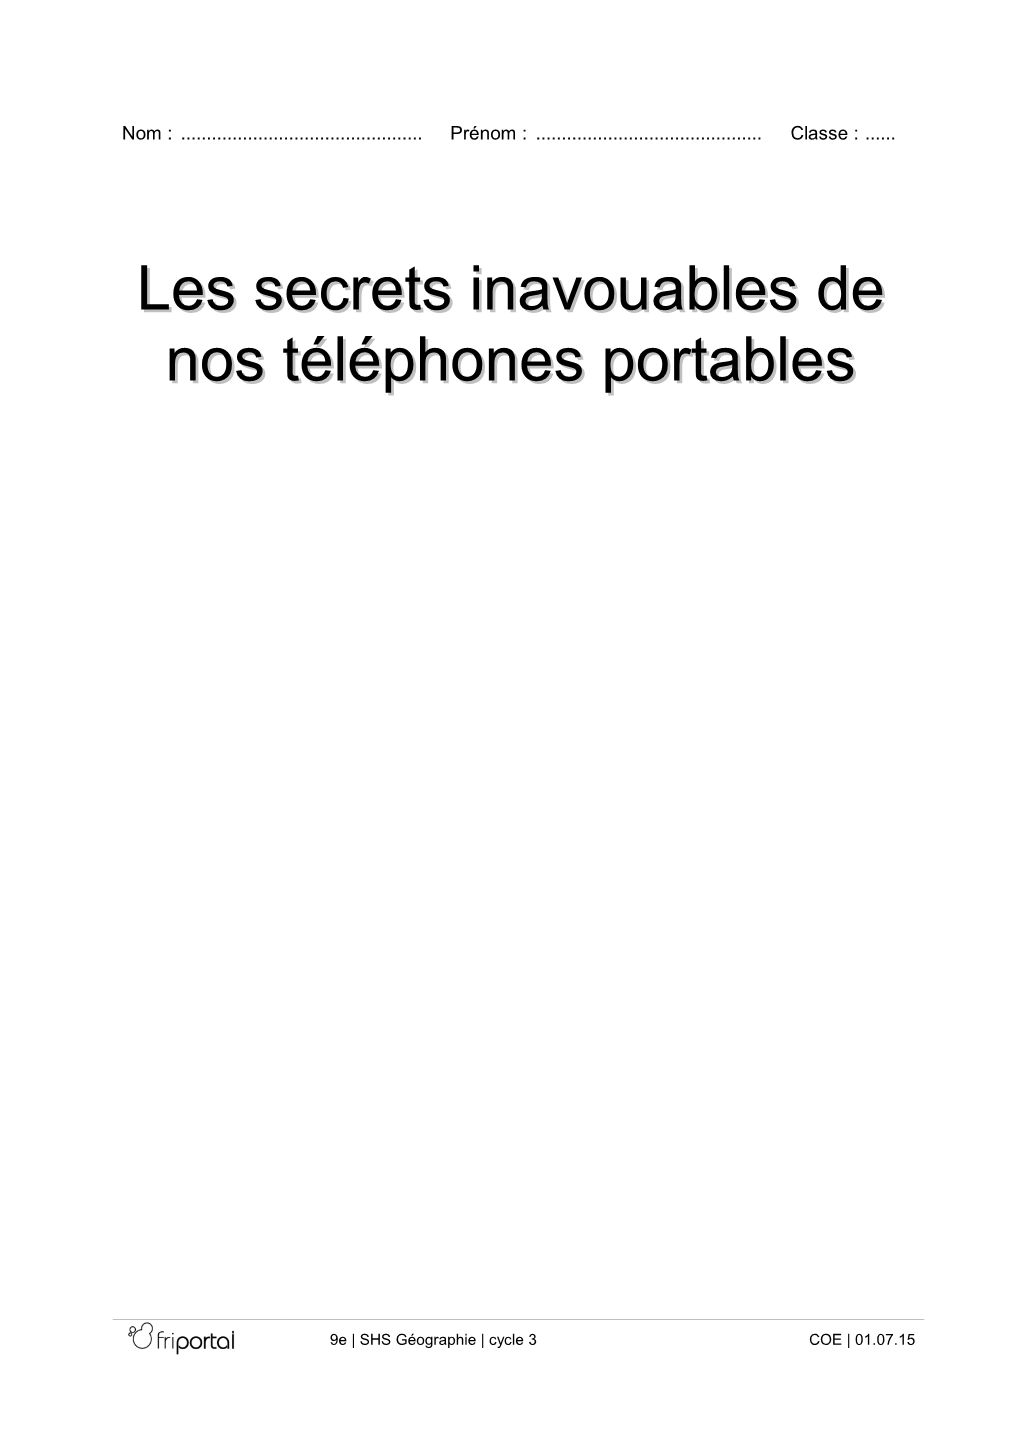 Les Secrets Inavouables De Nos Téléphones Portables" (1:18)